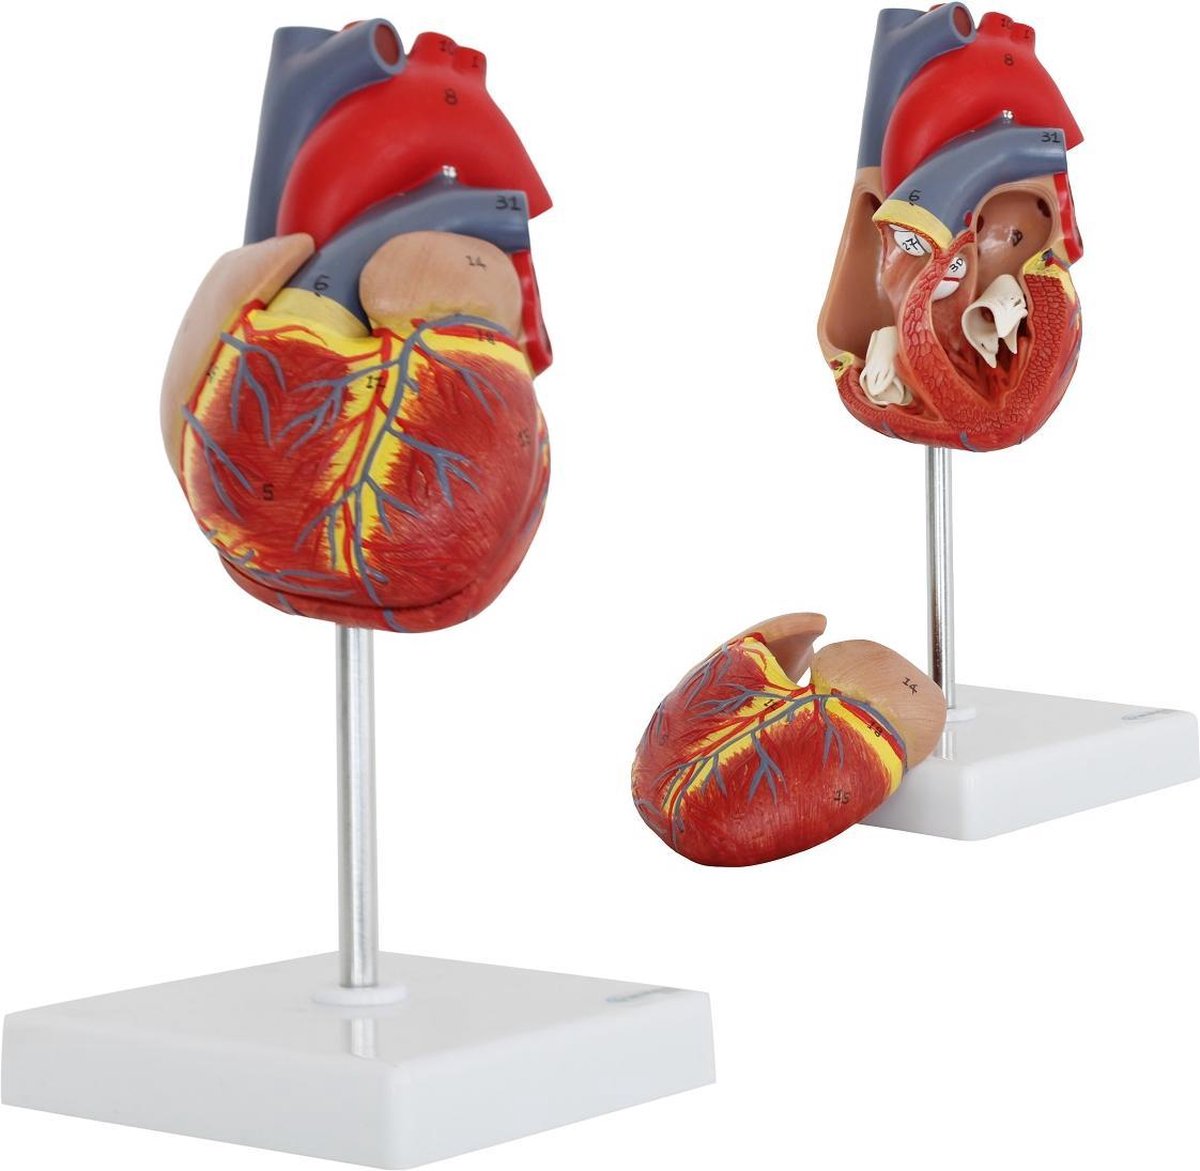 Het menselijk lichaam - anatomie model hart, 2-delig